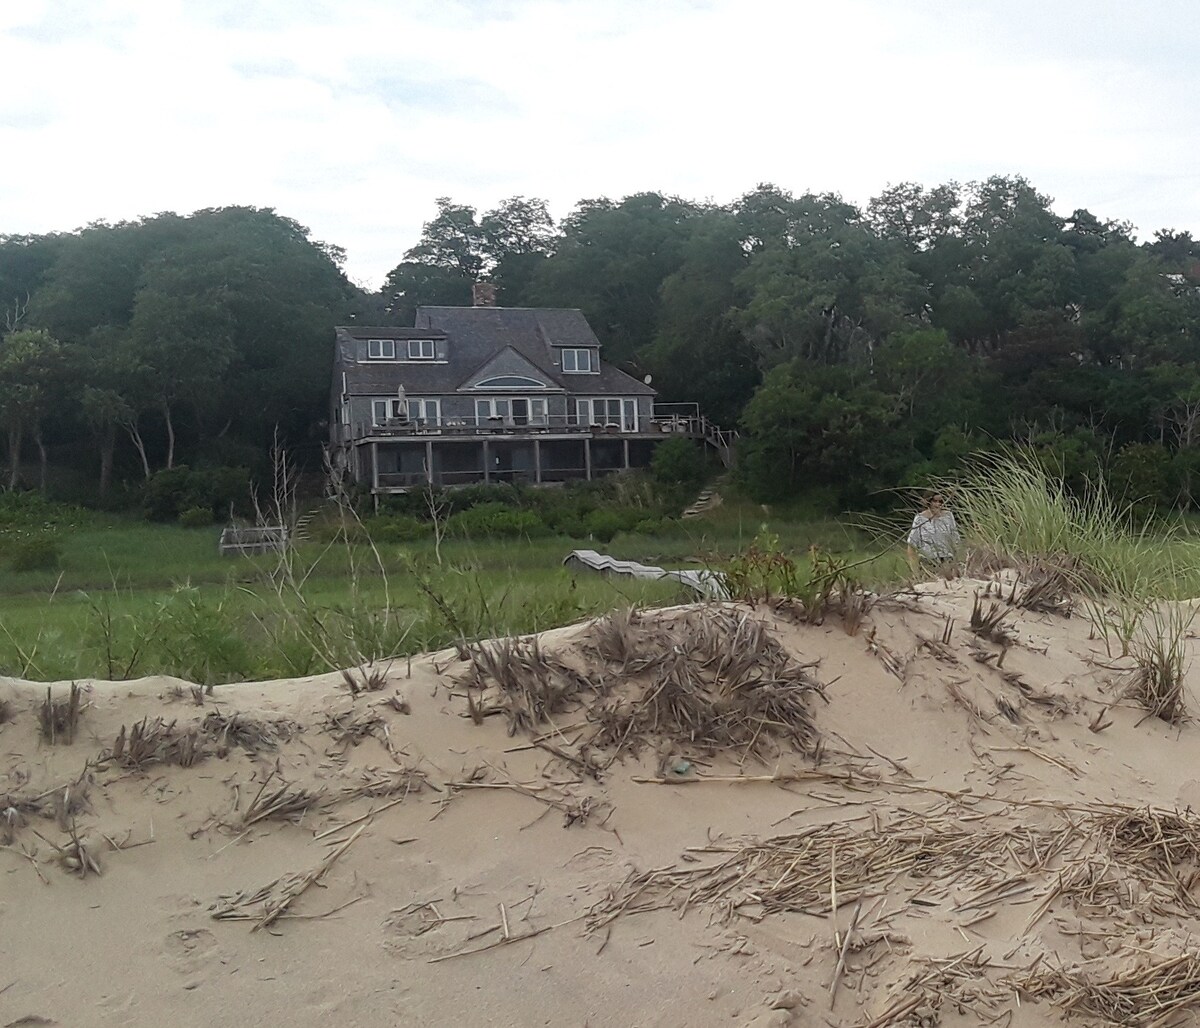 The Beach House of Wellfleet